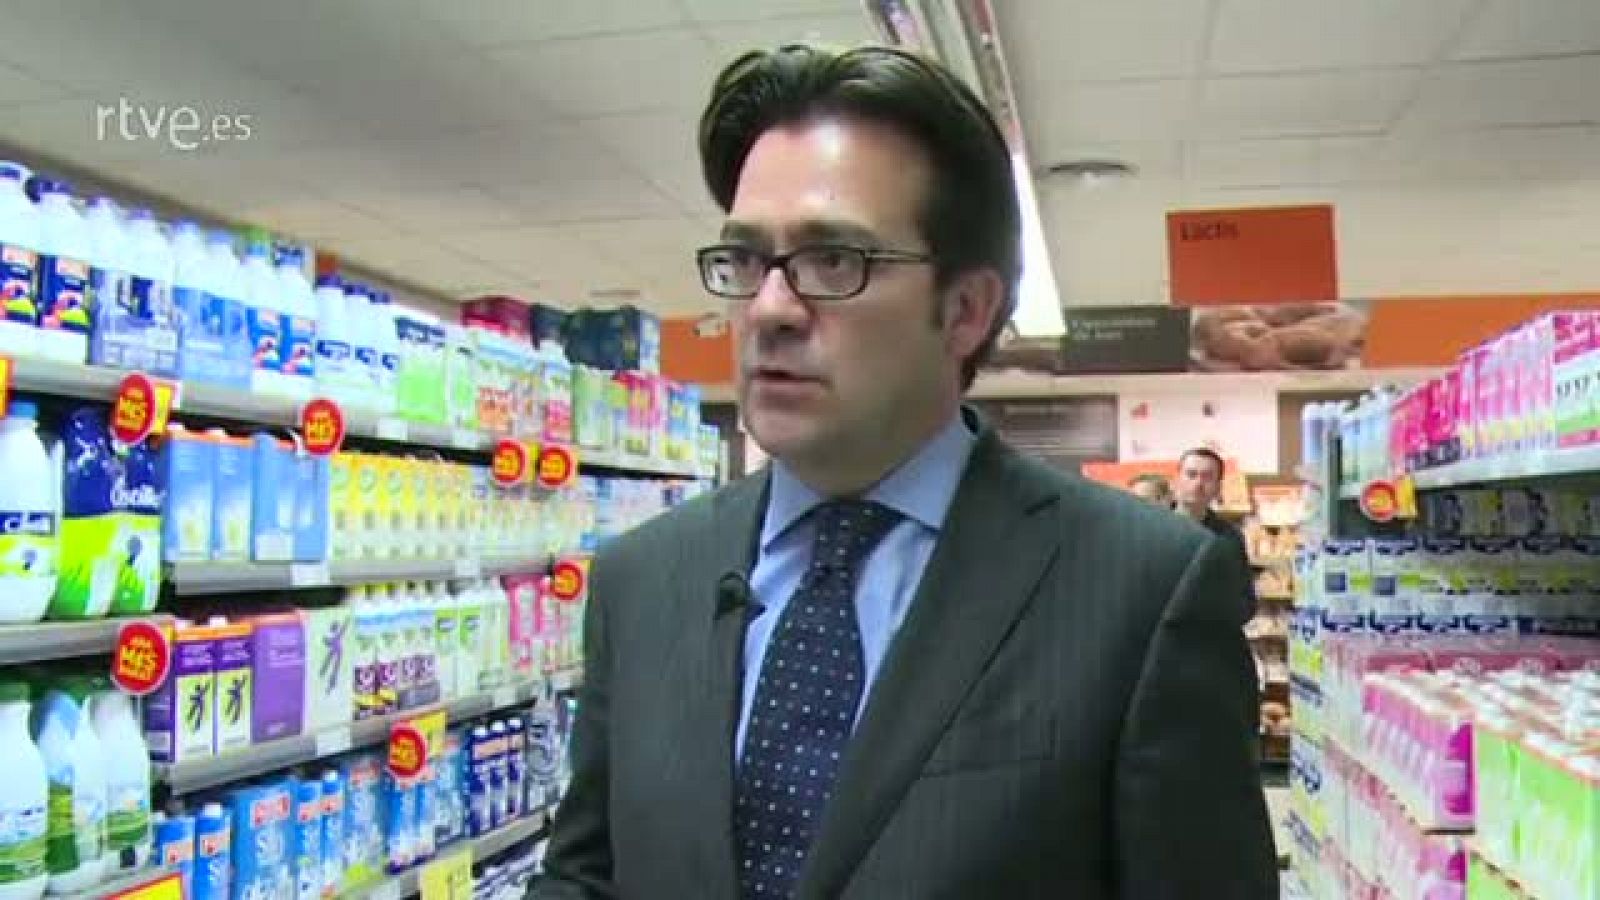 Repor - Las cuentas del lechero - Declaraciones de Ignacio García de la Asociación Española de Supermercados